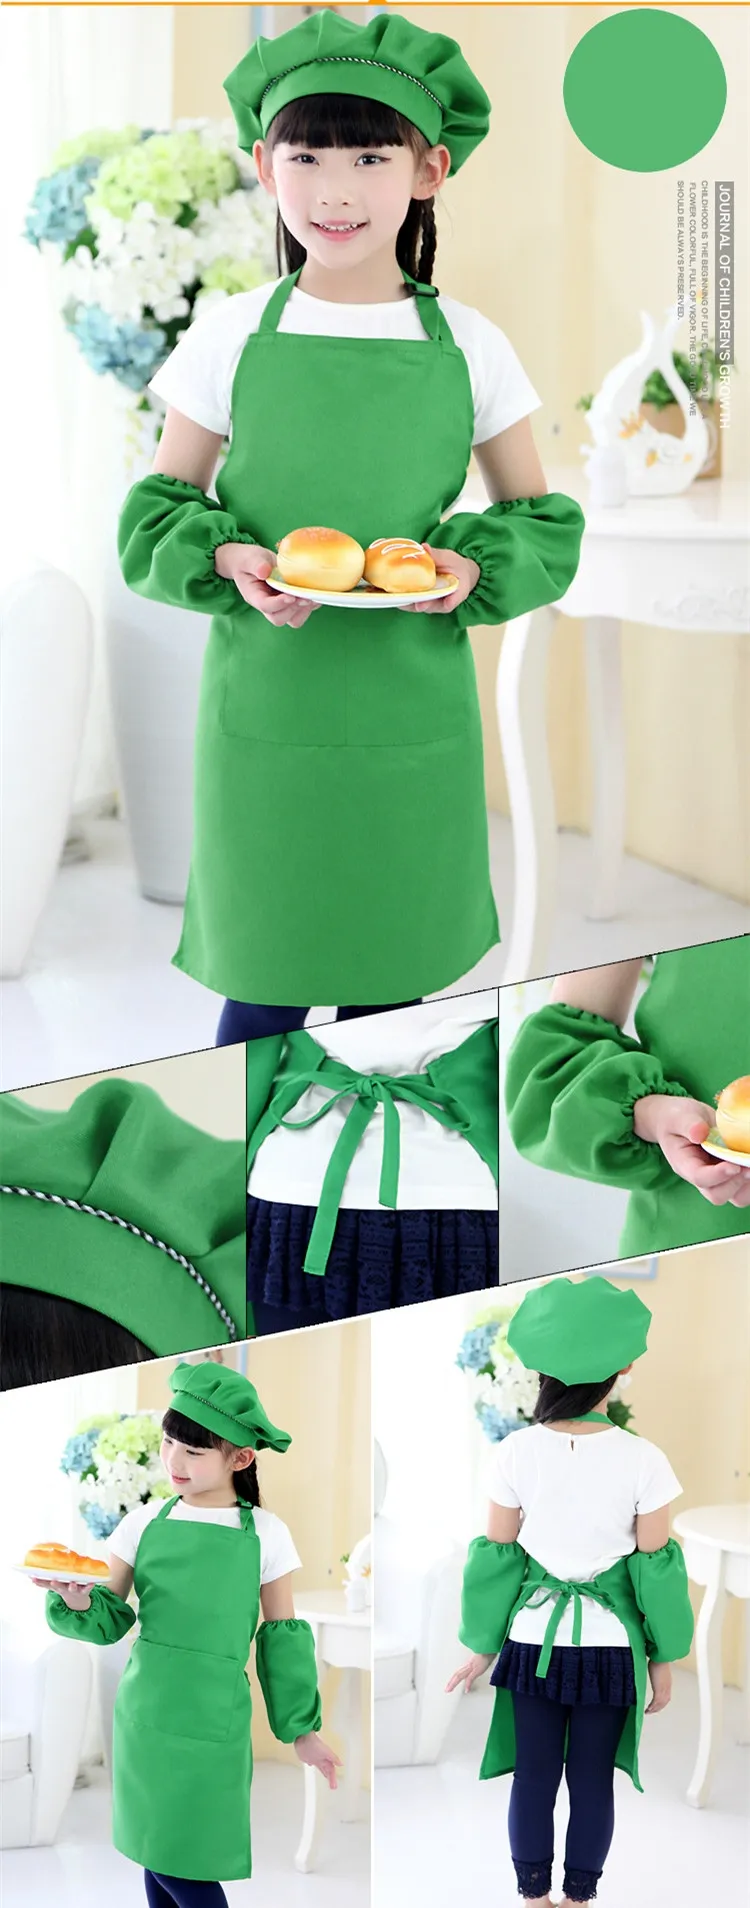 키즈 앞치마 주머니 공예 요리 제빵 아트 페인팅 아이 주방 식당 턱받이 아이 미리 모자와 소매 아동 앞치마 10 C7305048